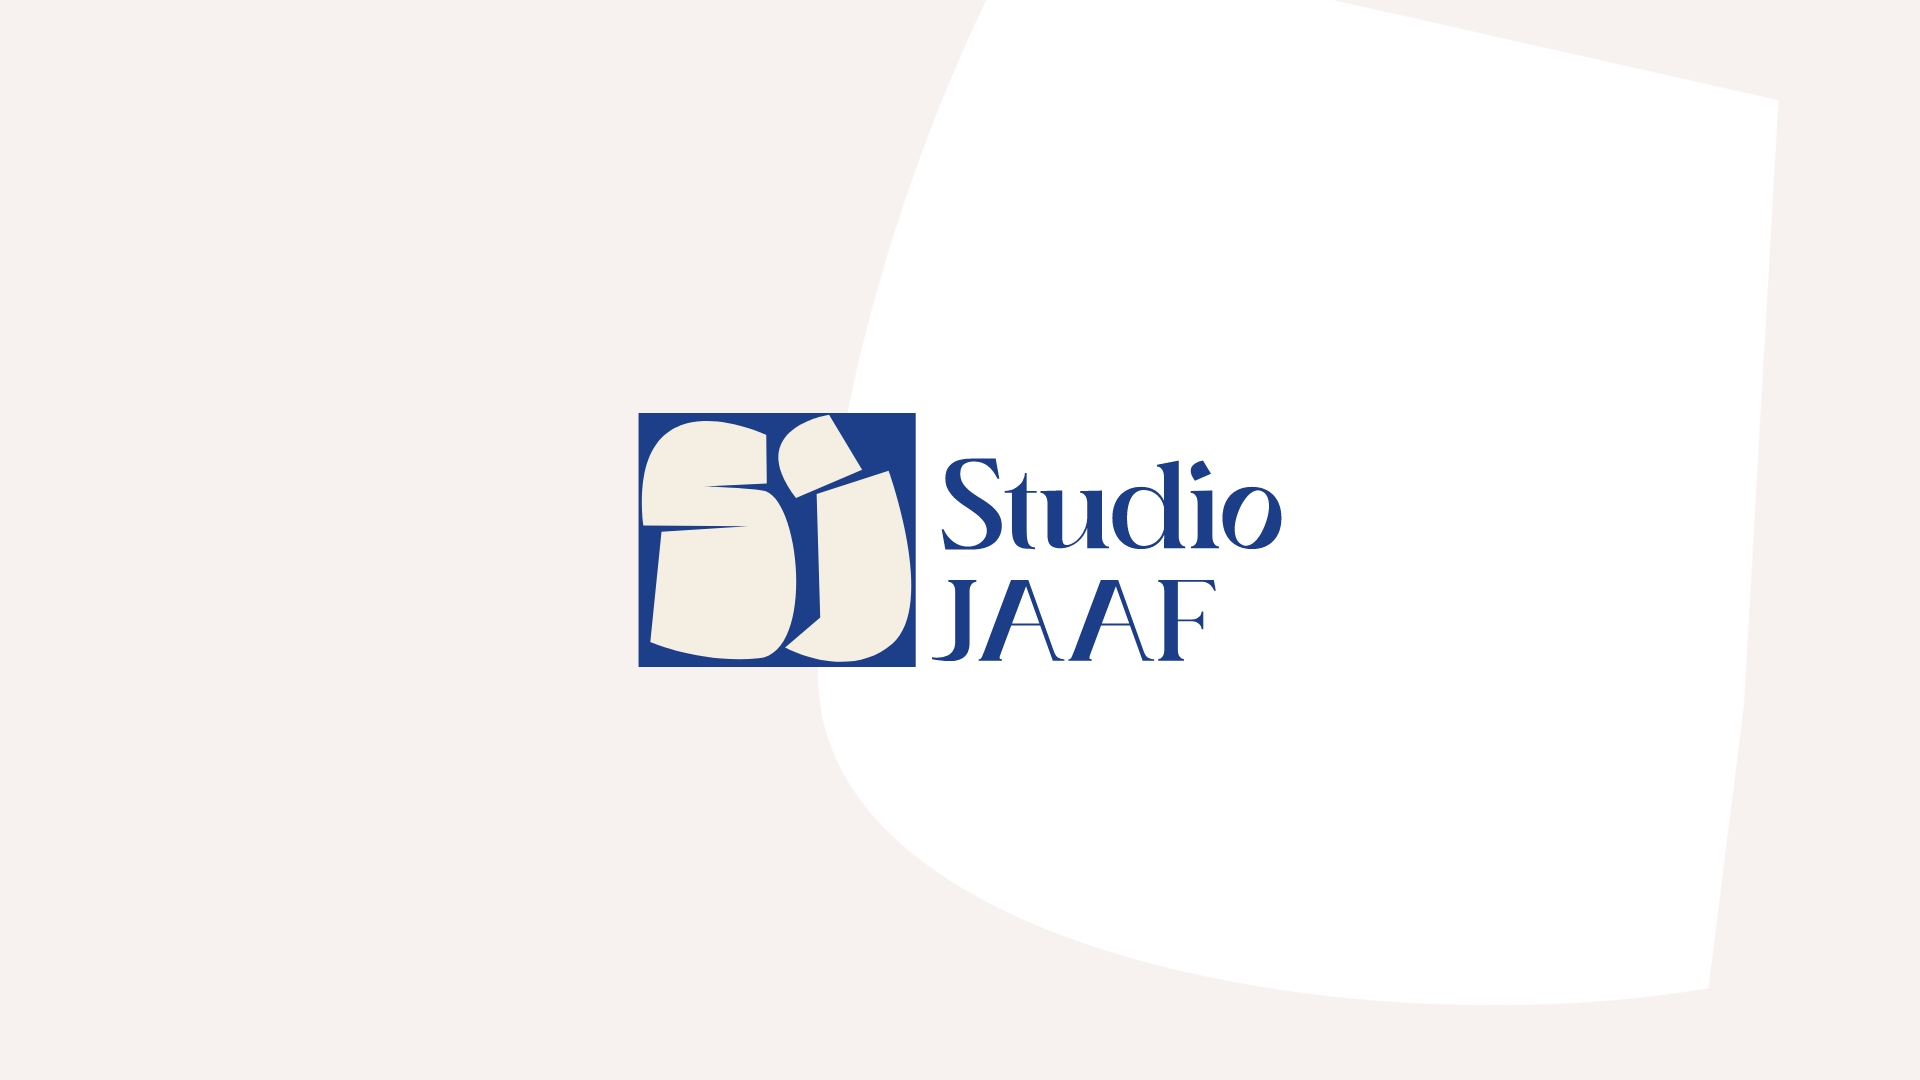 Studio JAAF Branding